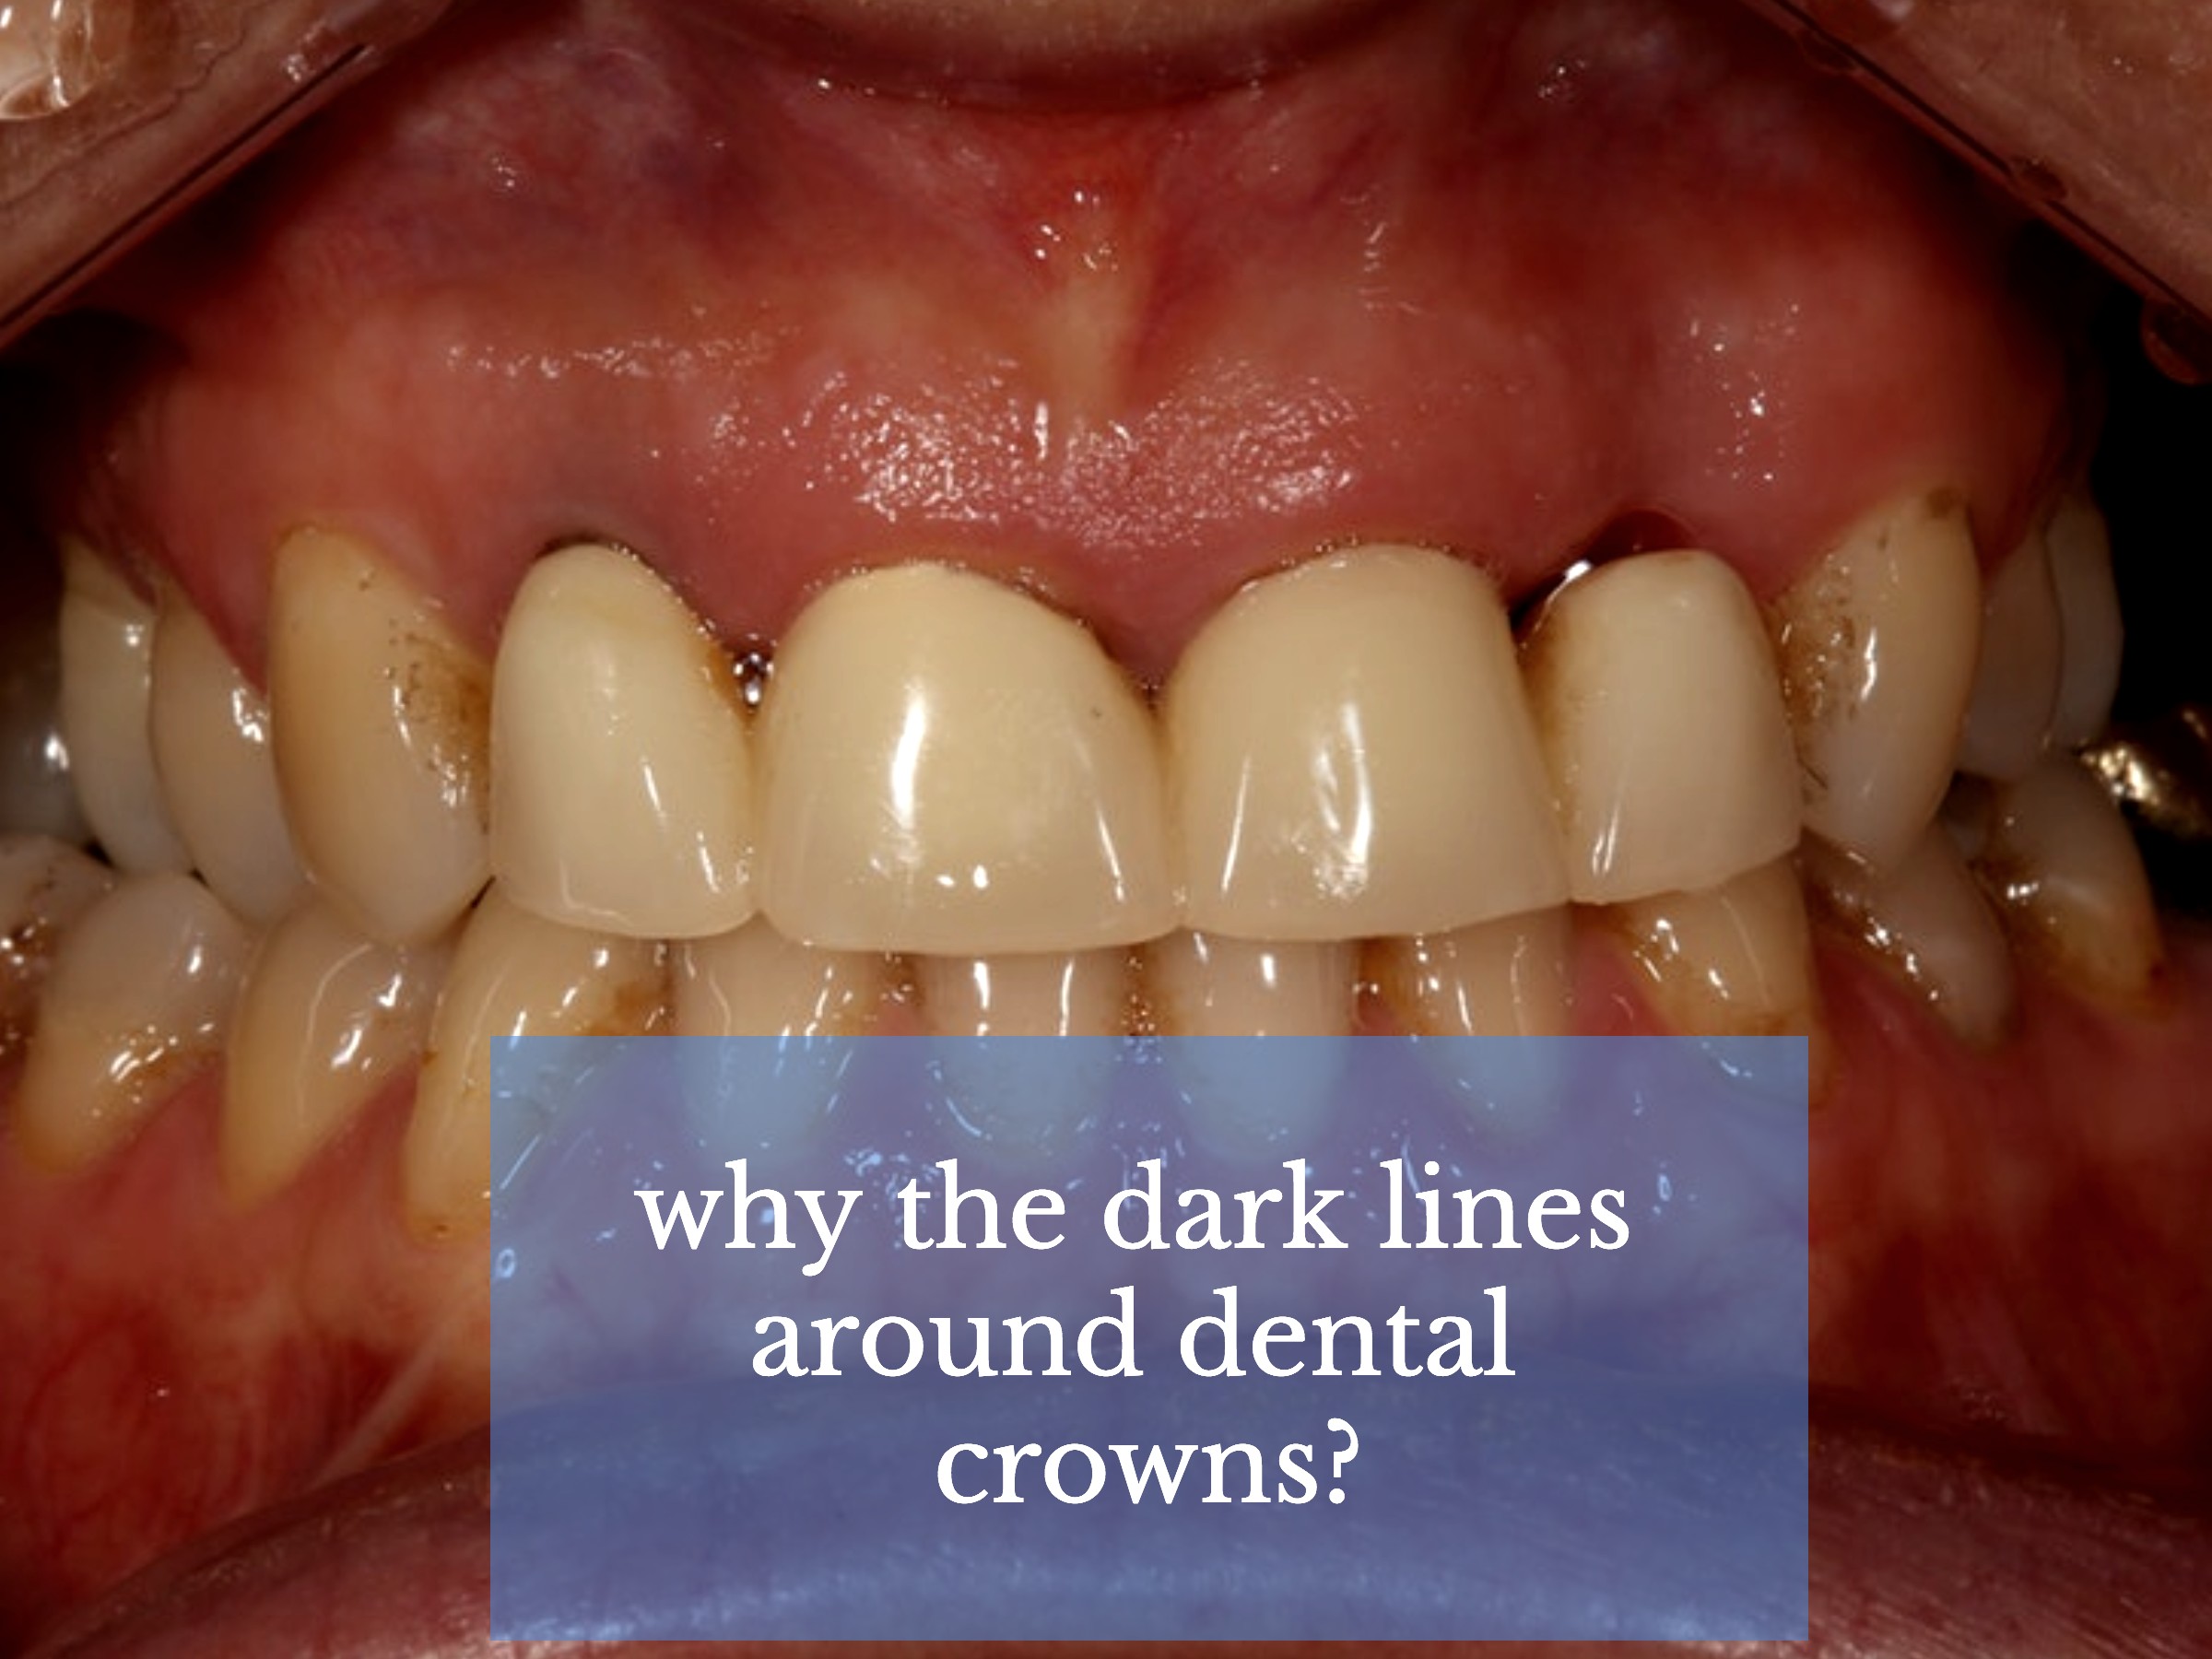 dark lines around dental crowns